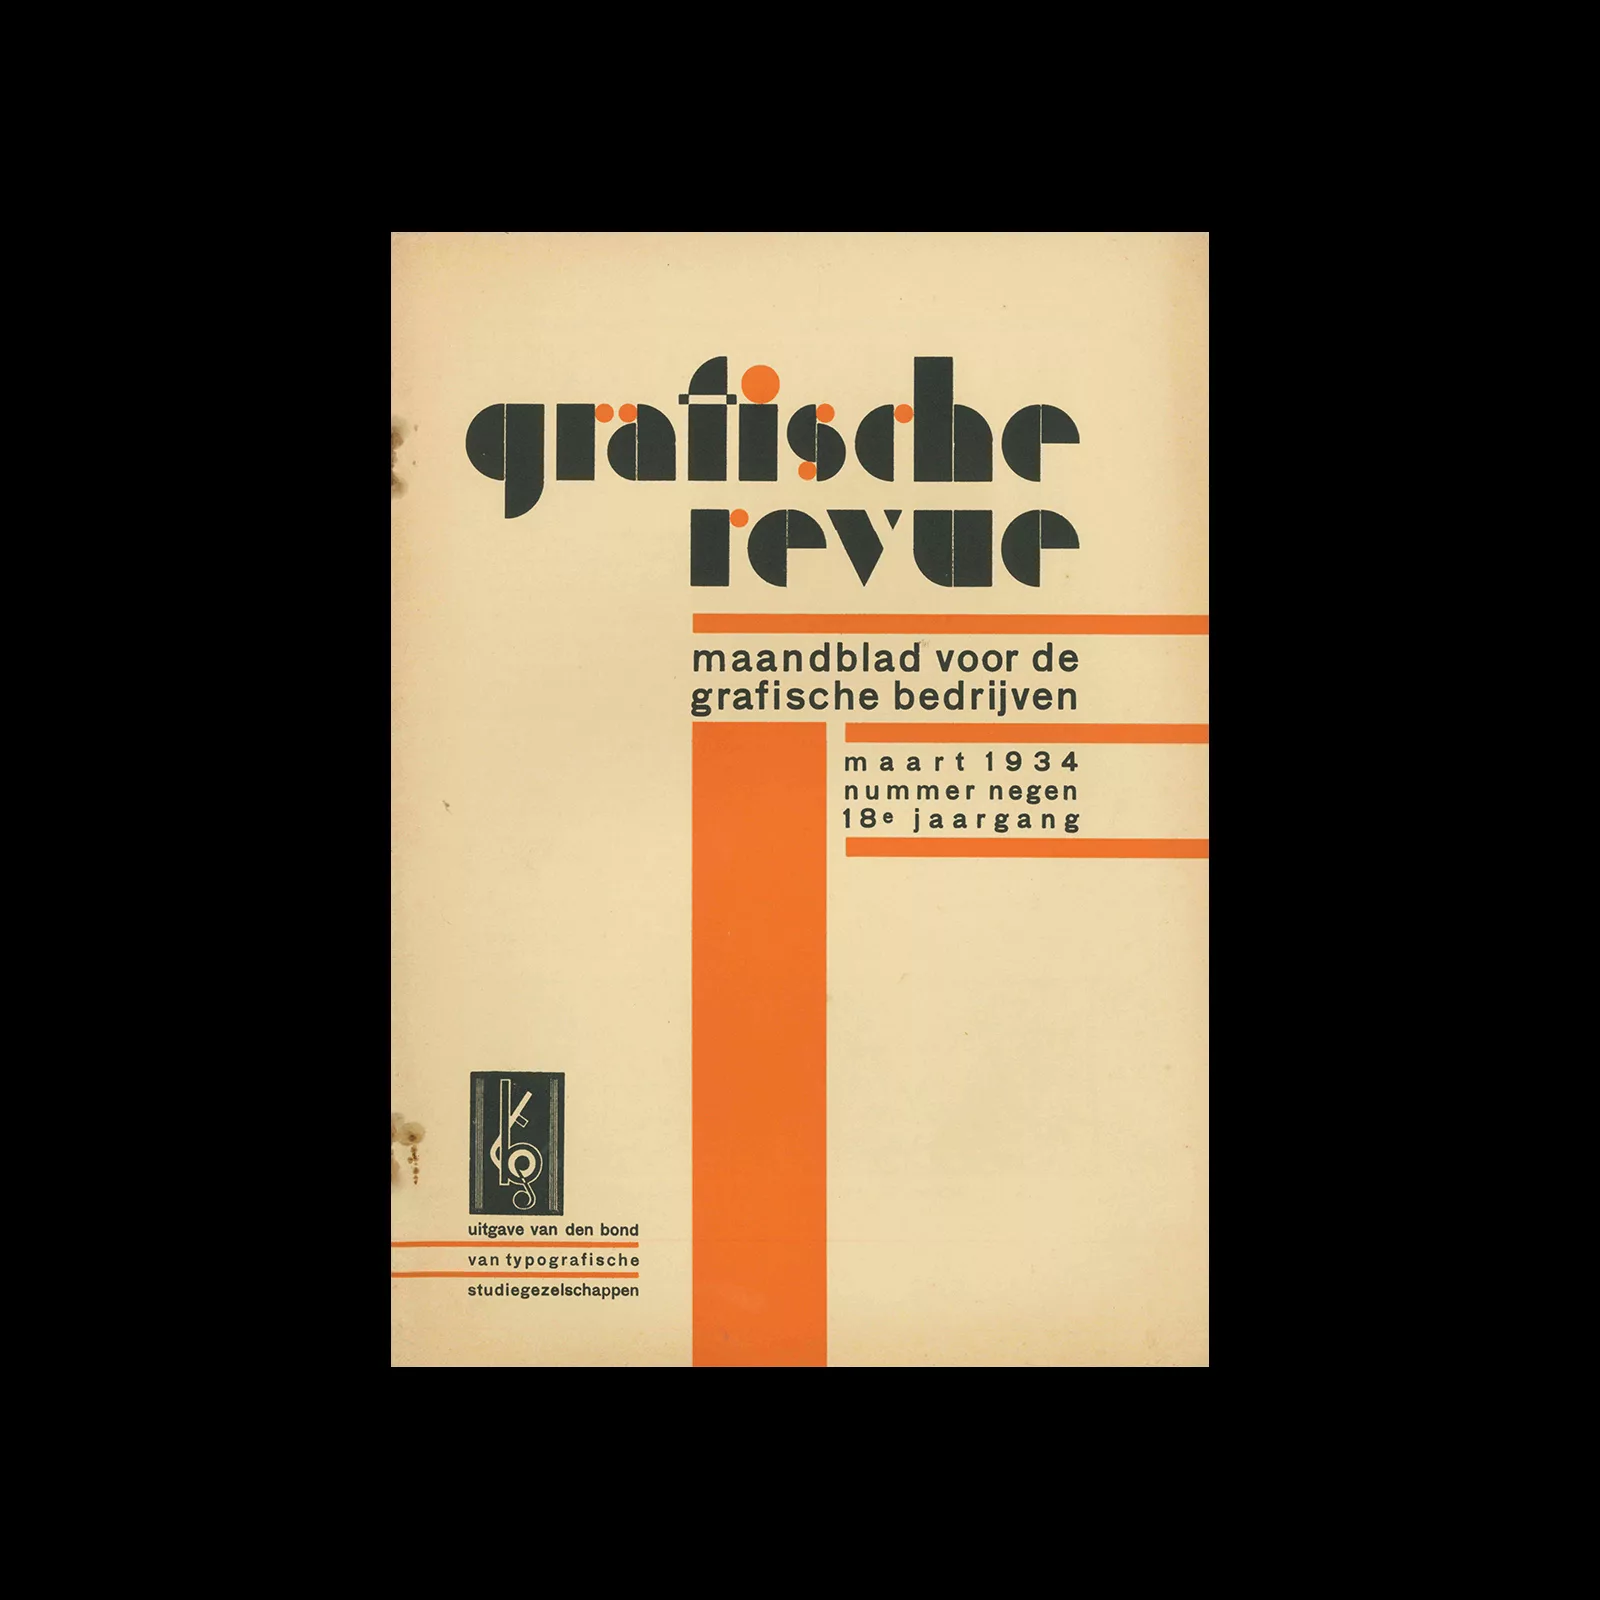 Graphische Revue, 18 Jaargang, Maart 1934